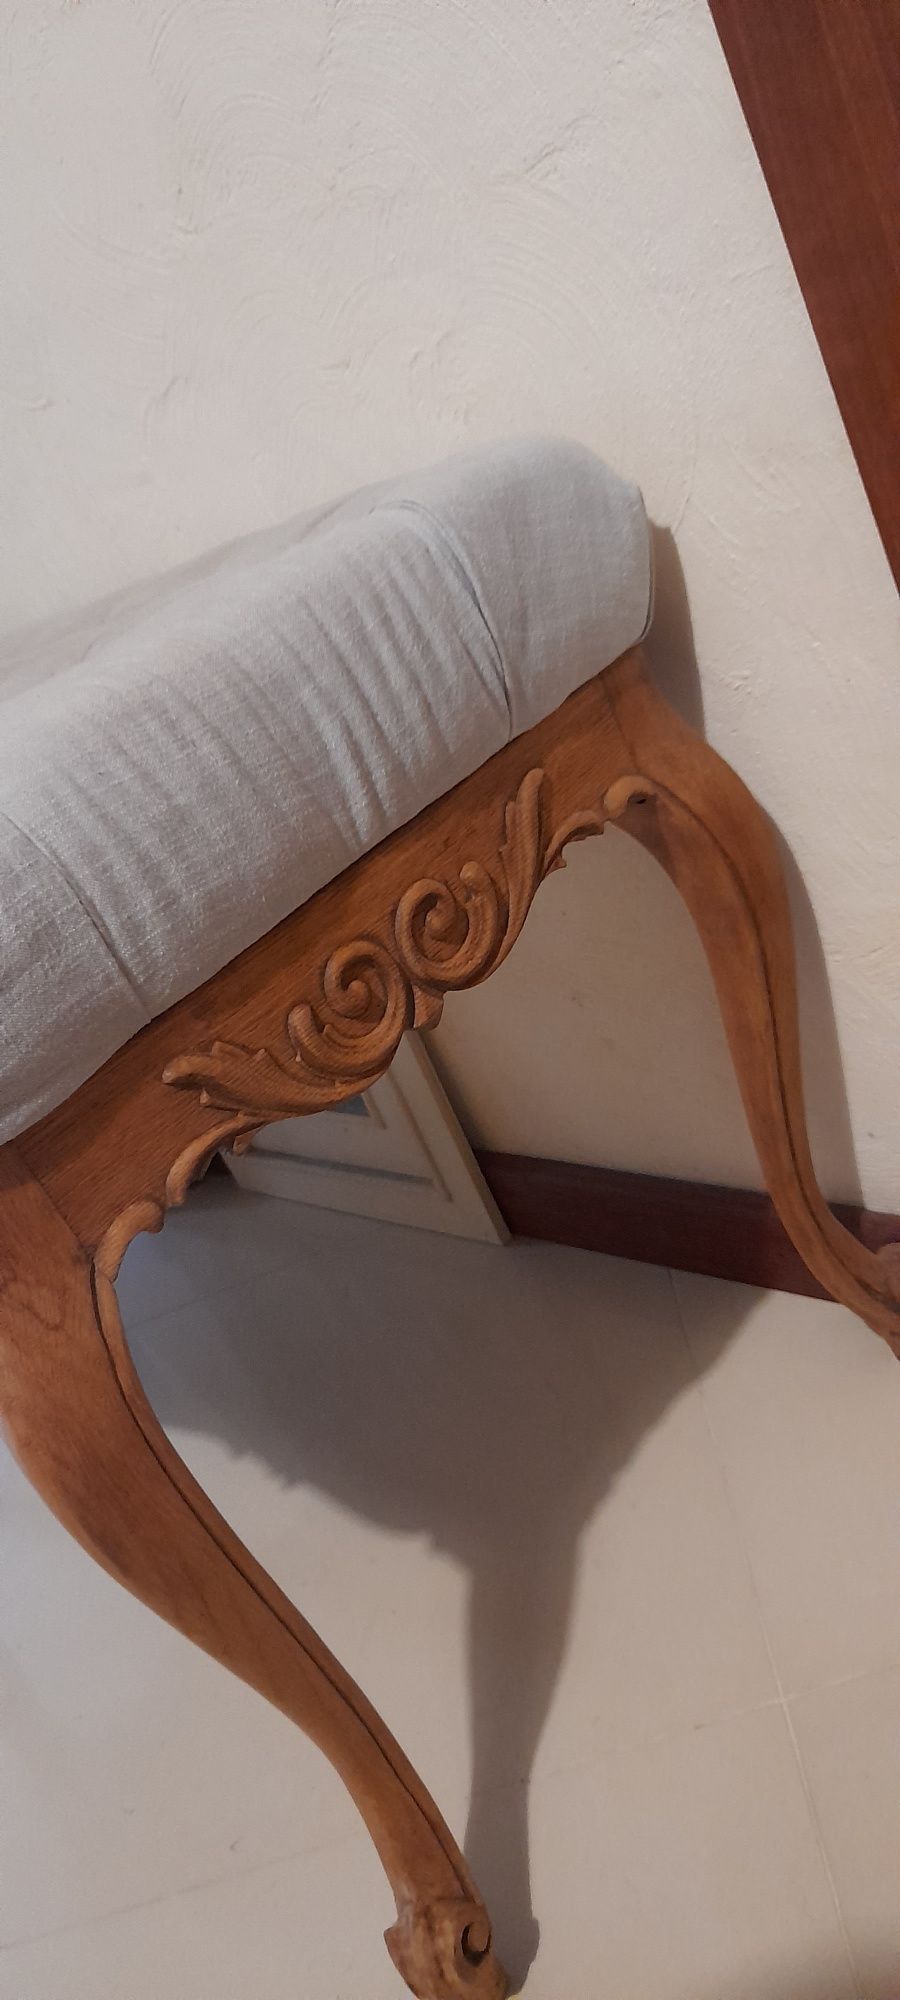 Francuska ławeczka, siedzisko z pięknymi rzeźbieniami